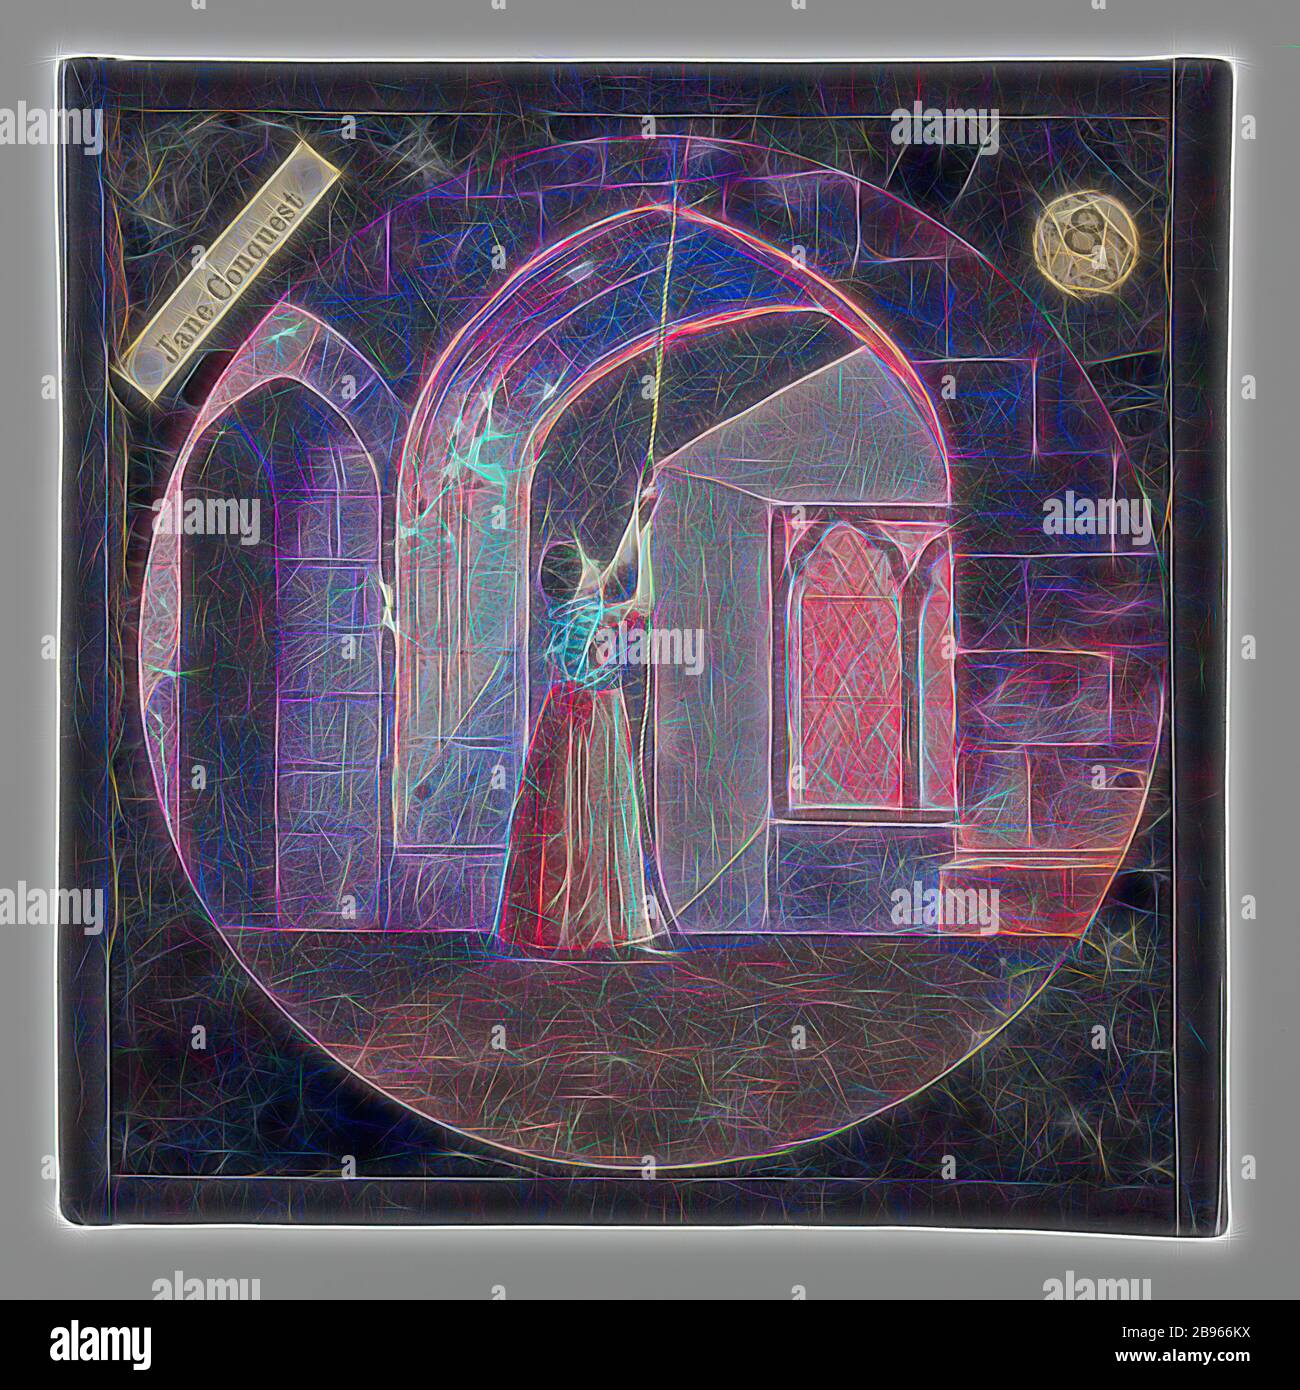 Diapositiva de linterna - 'Jane Conquest', finales del siglo XIX, juego de  dieciséis diapositivas de linterna mágica utilizadas para contar la historia  de Jane Conquest utilizando un proyector de linterna mágica. Un